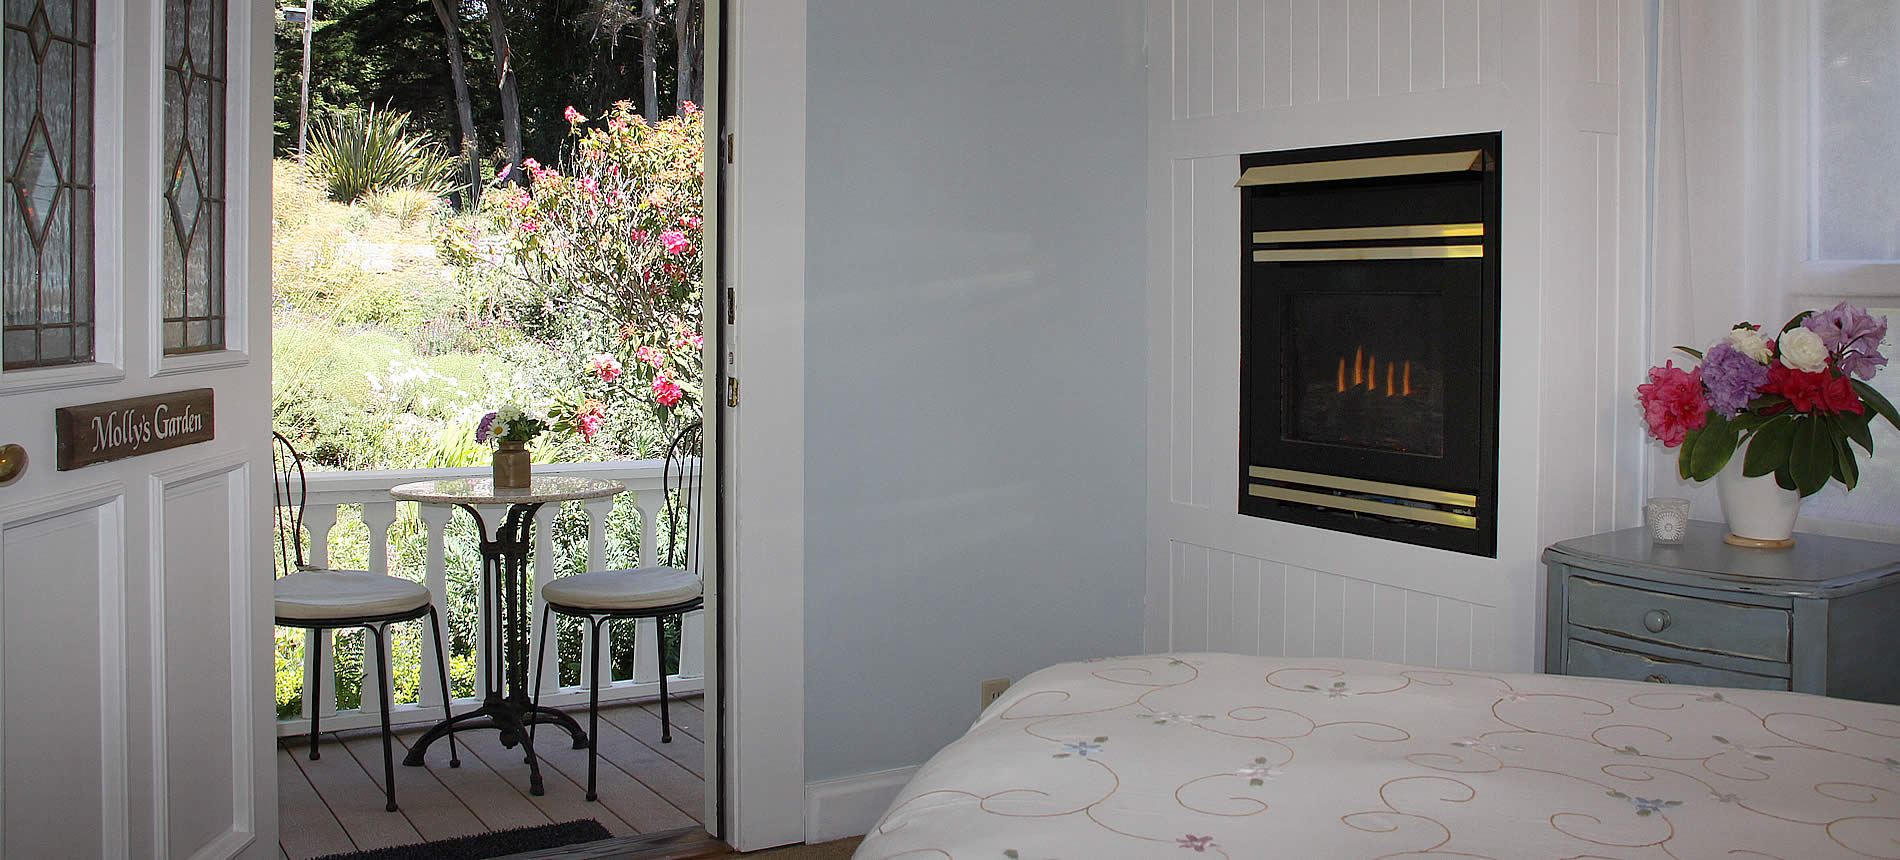 mendocino coast lodging mollys garden guest room